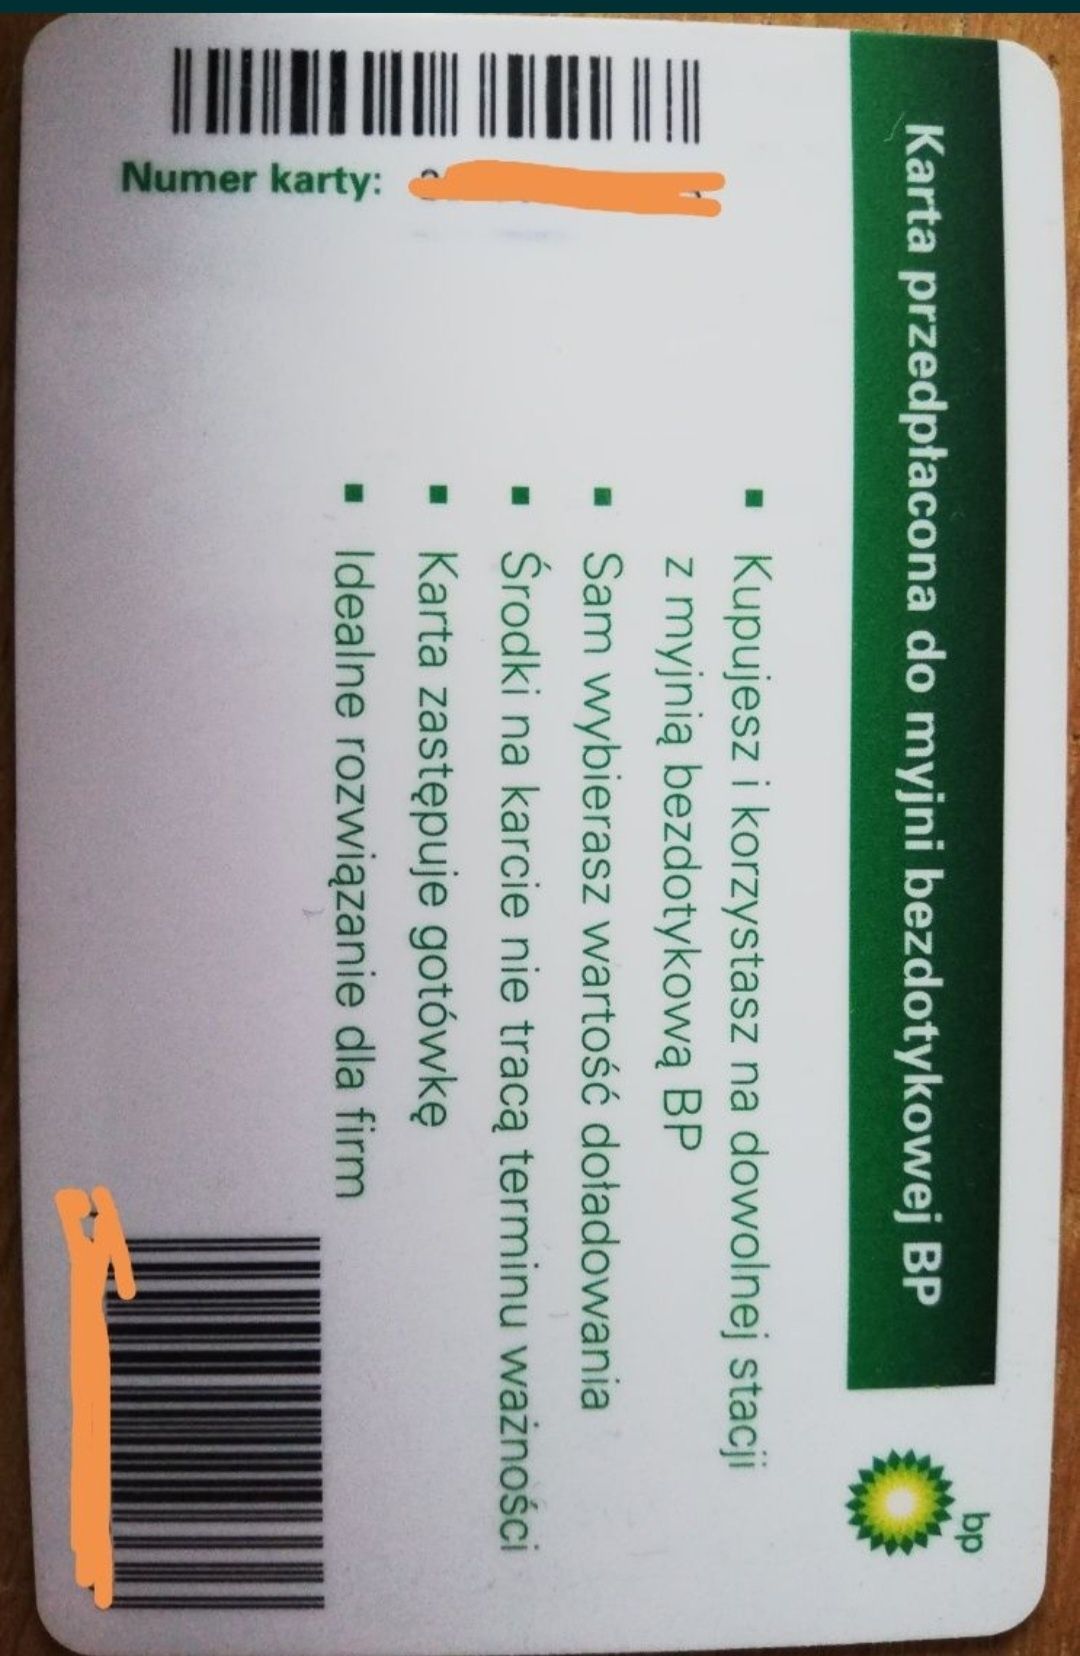 Karta myjnia bezdotykowa BP 200zl + 5zl kaucja gratis